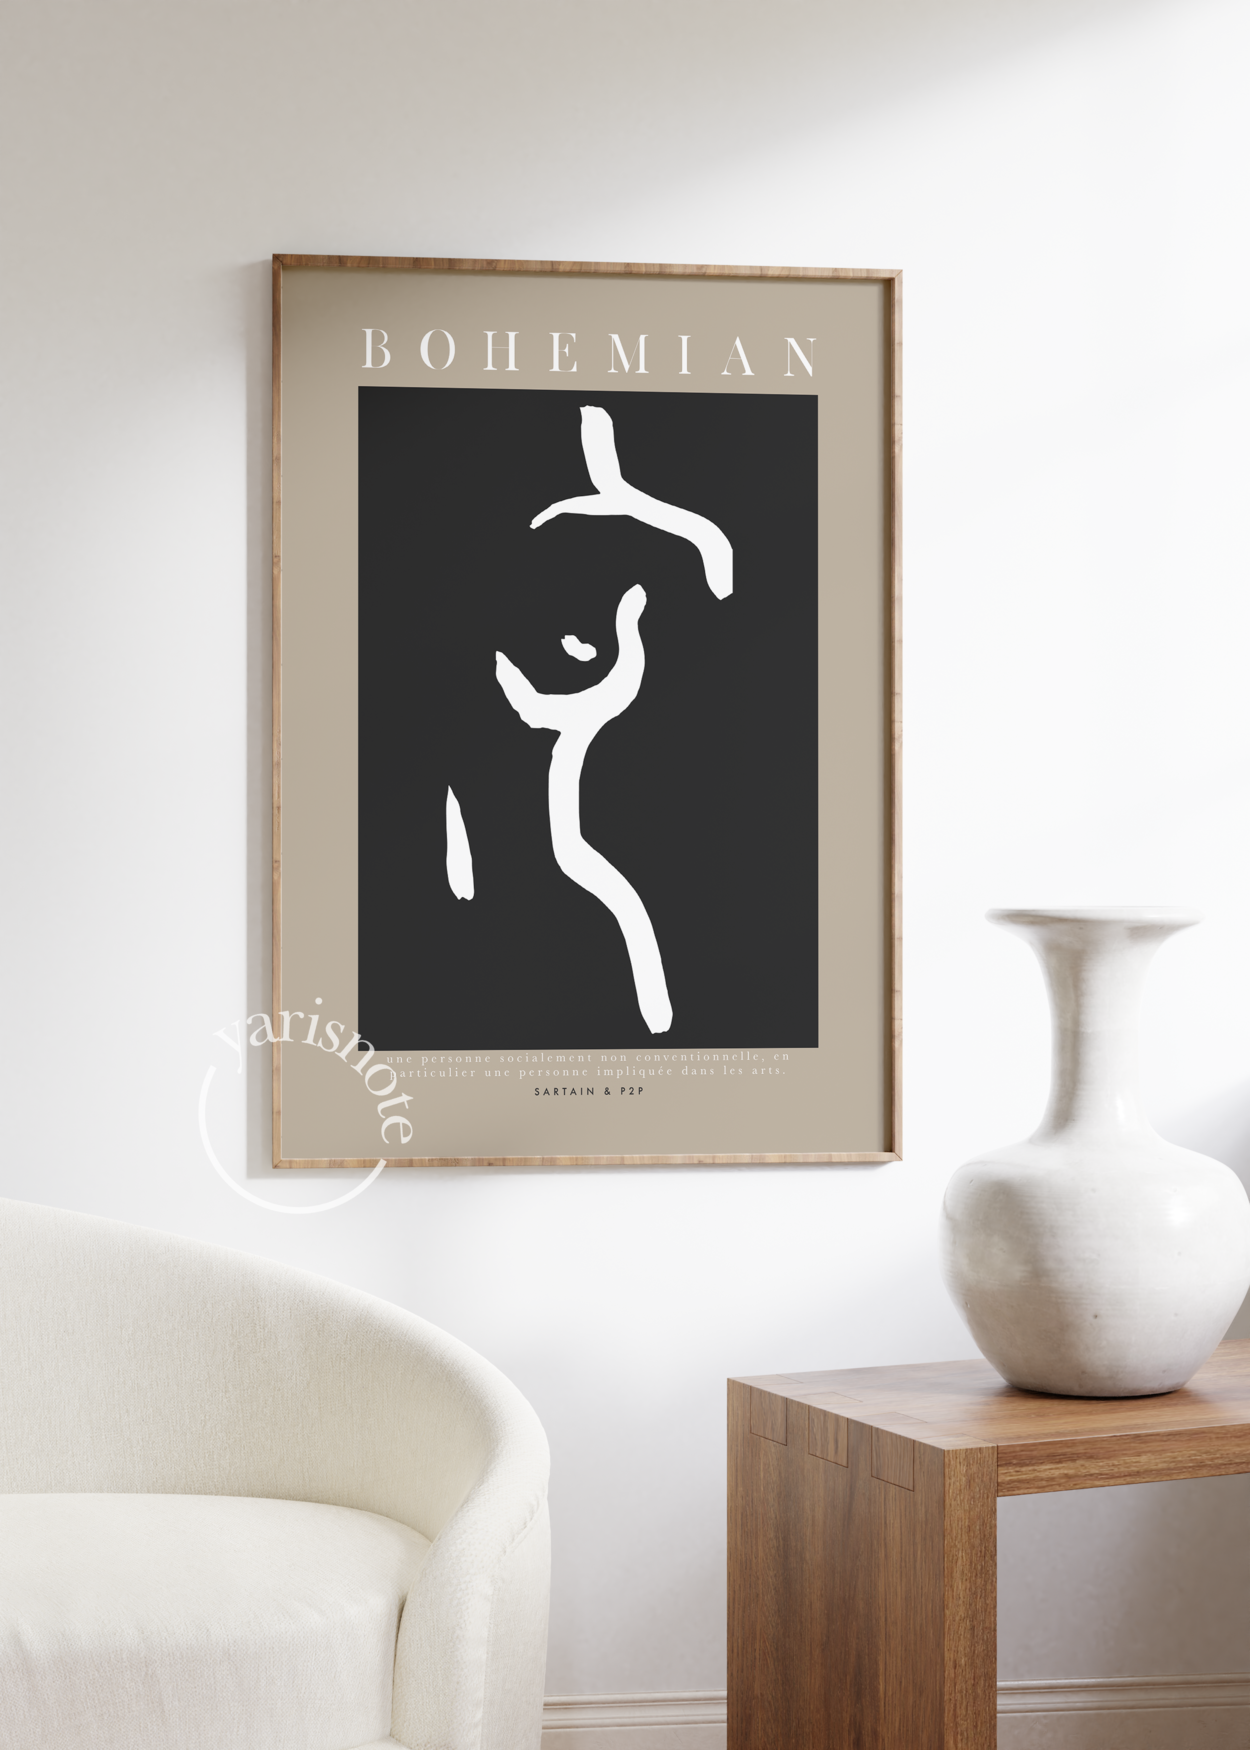 Bohemian Unframed Poster